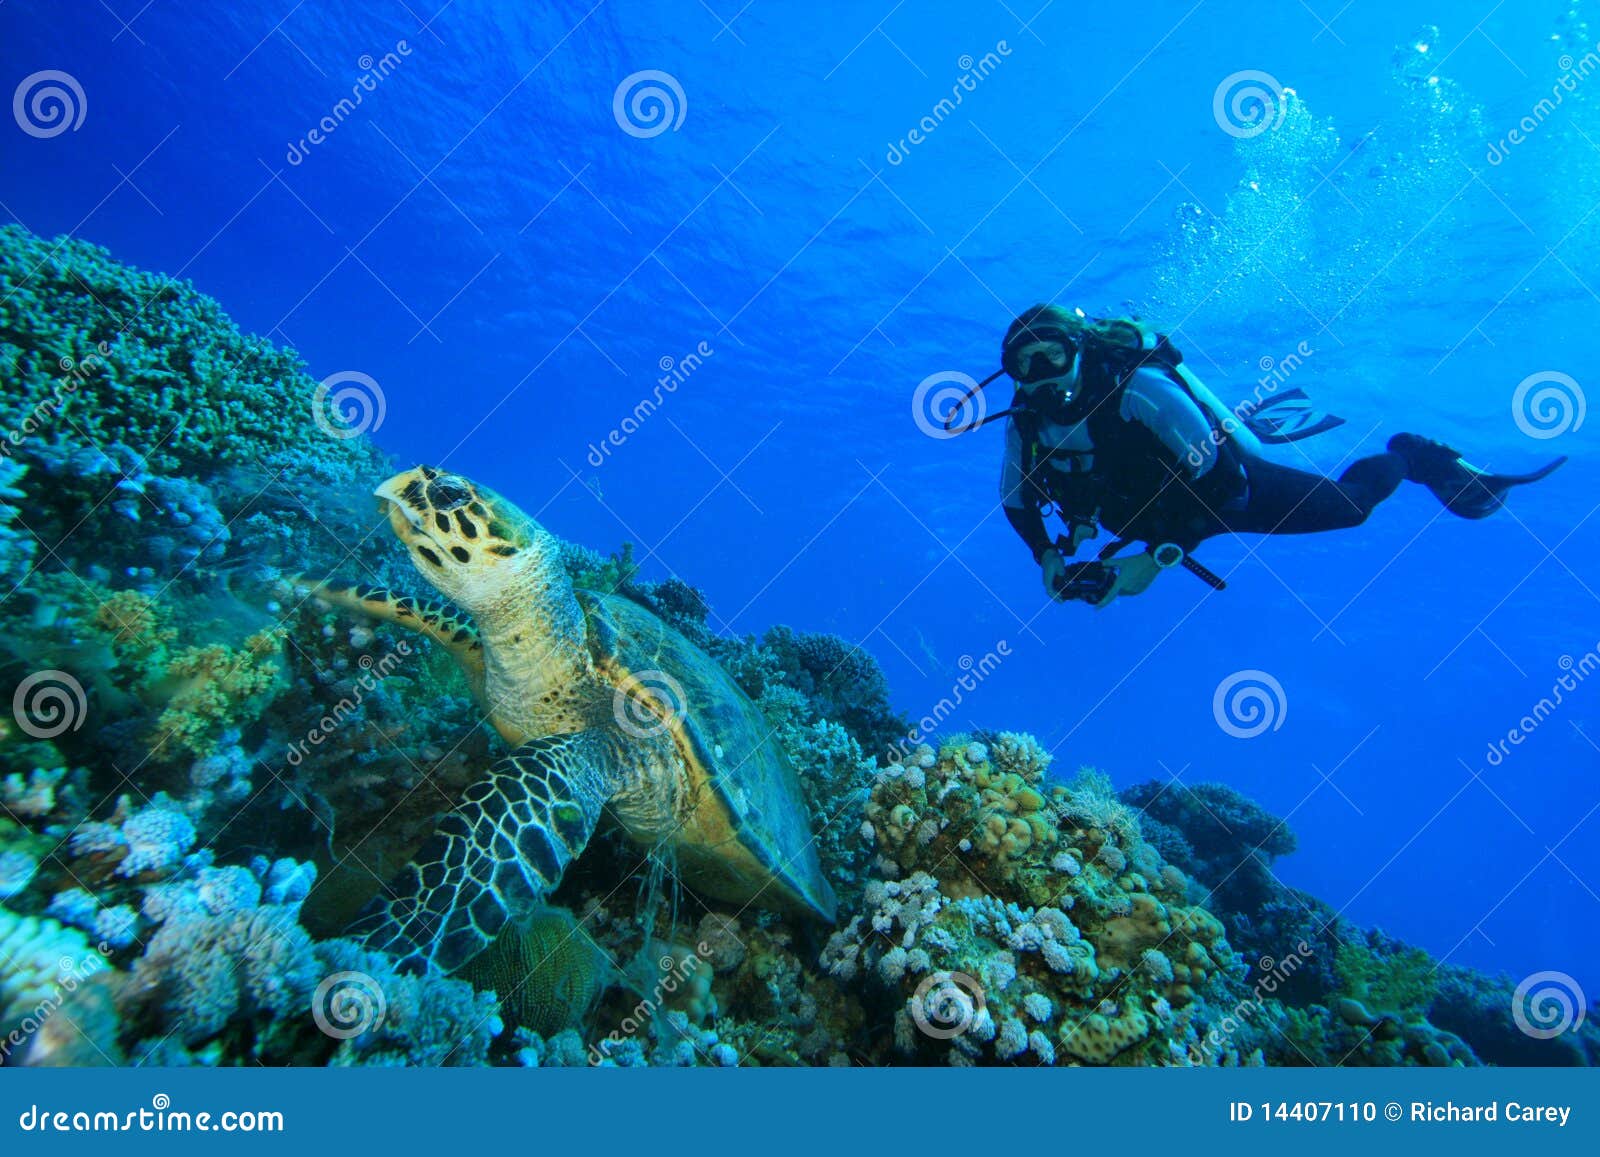 turtle and scuba diver